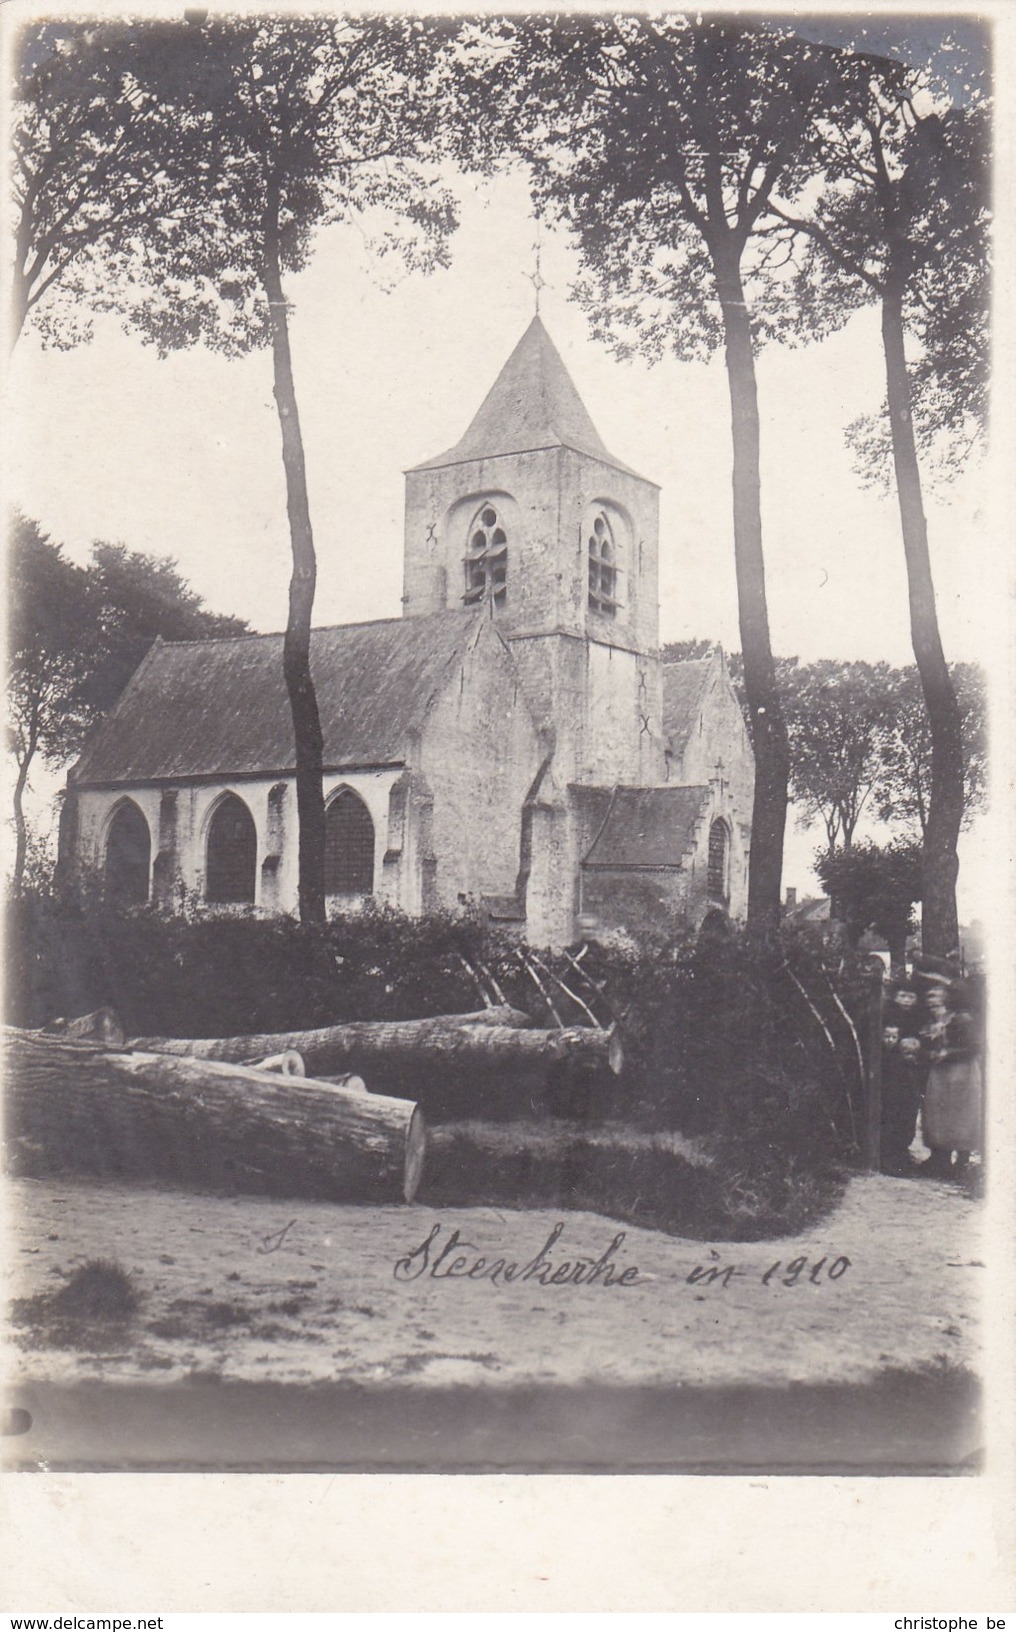 Steenkerke (Veurne) 1910, Kerk, Unieke Fotokaart (pk36630) - Veurne